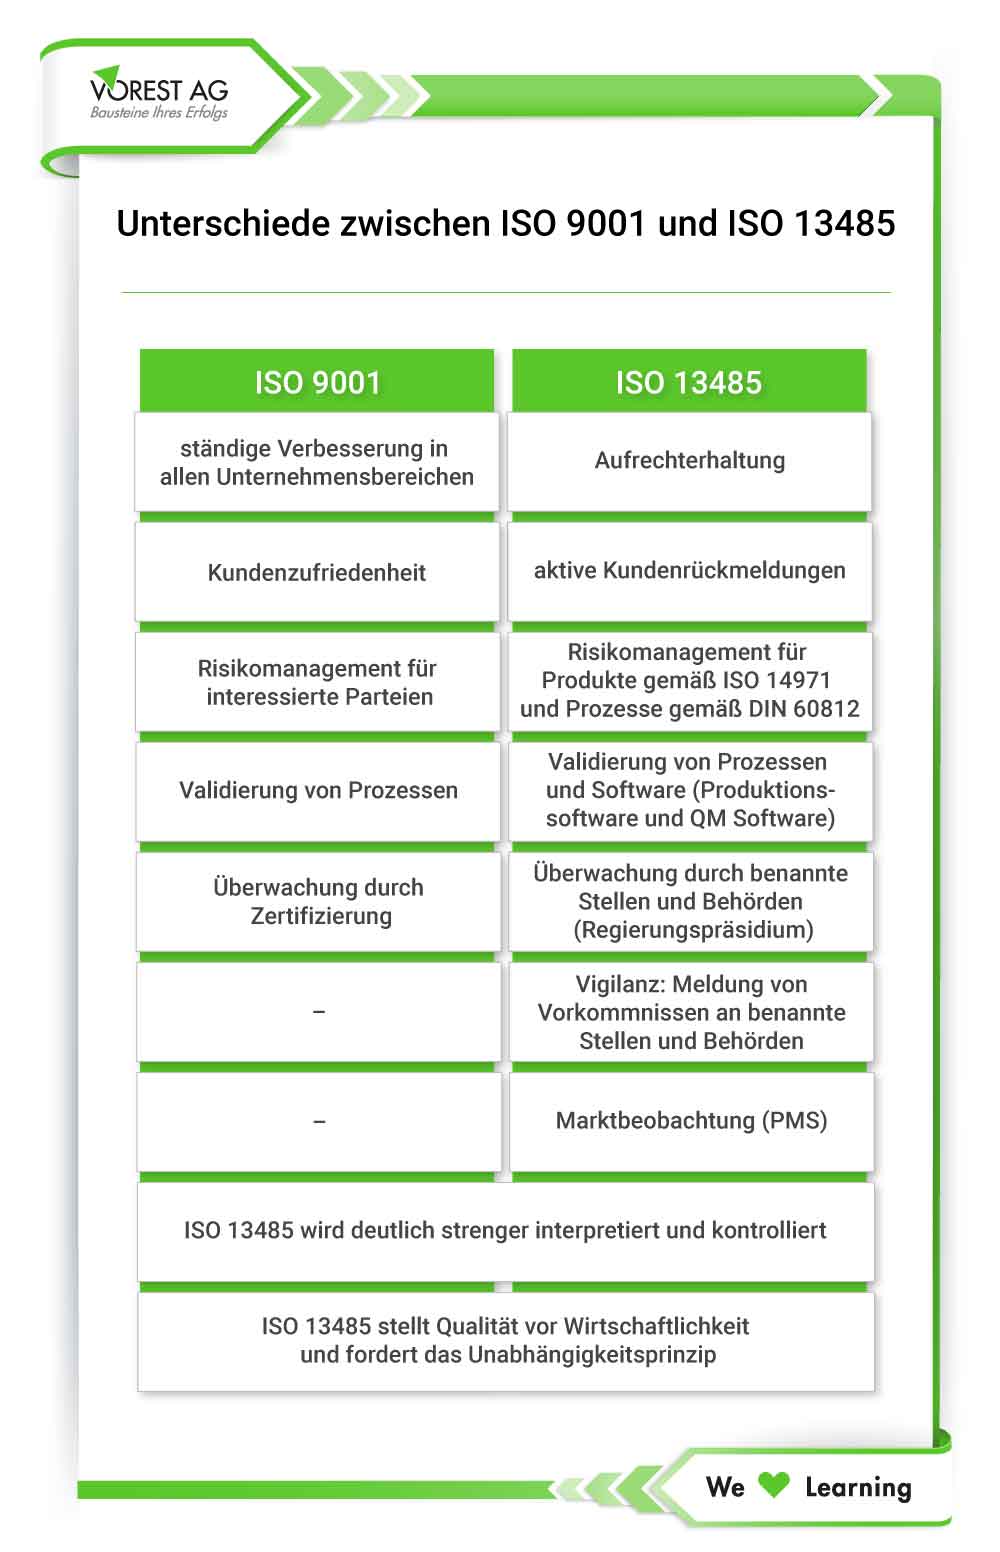 ISO 13485 und ISO 9001 Anforderungen - wo liegen die Unterschiede?